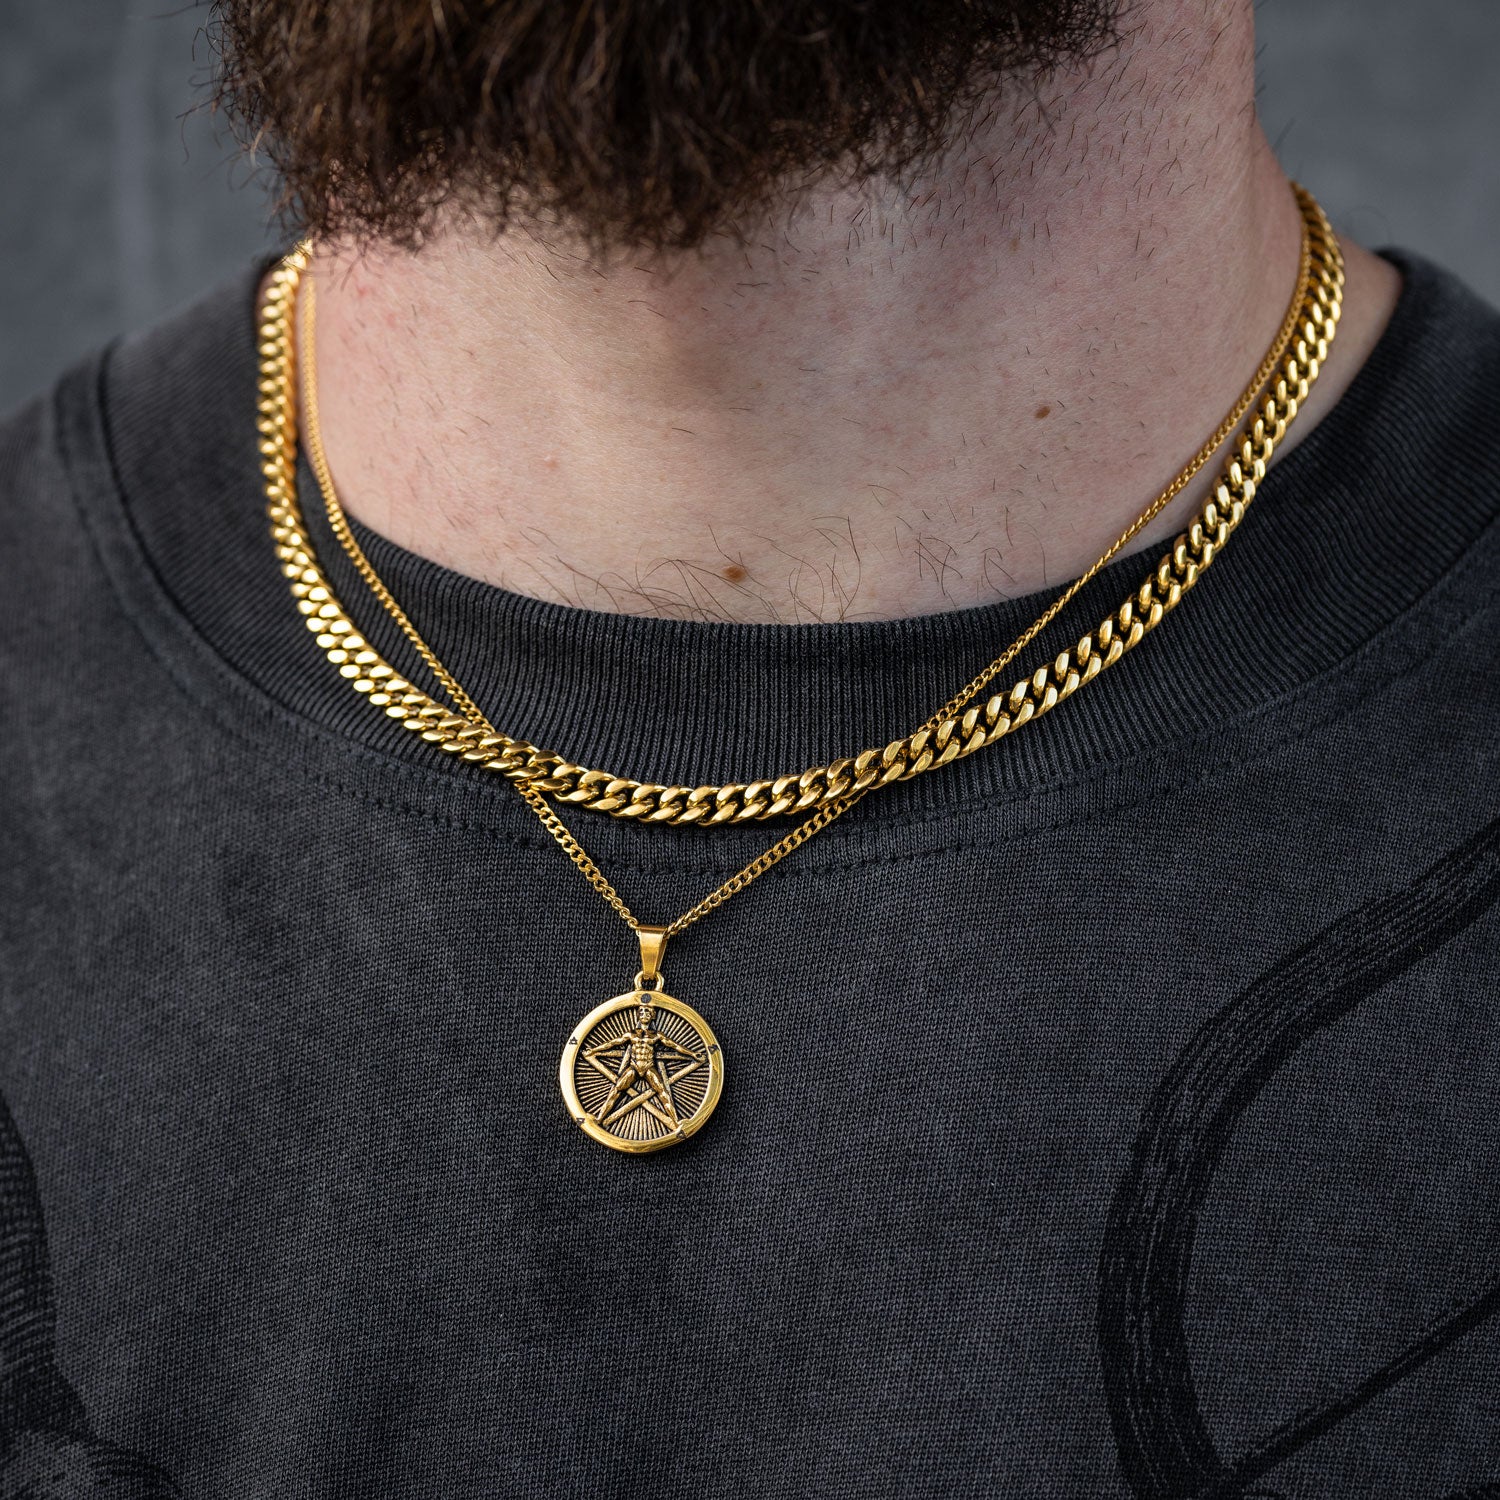 gold cuban necklace set by statement pentagram pendant